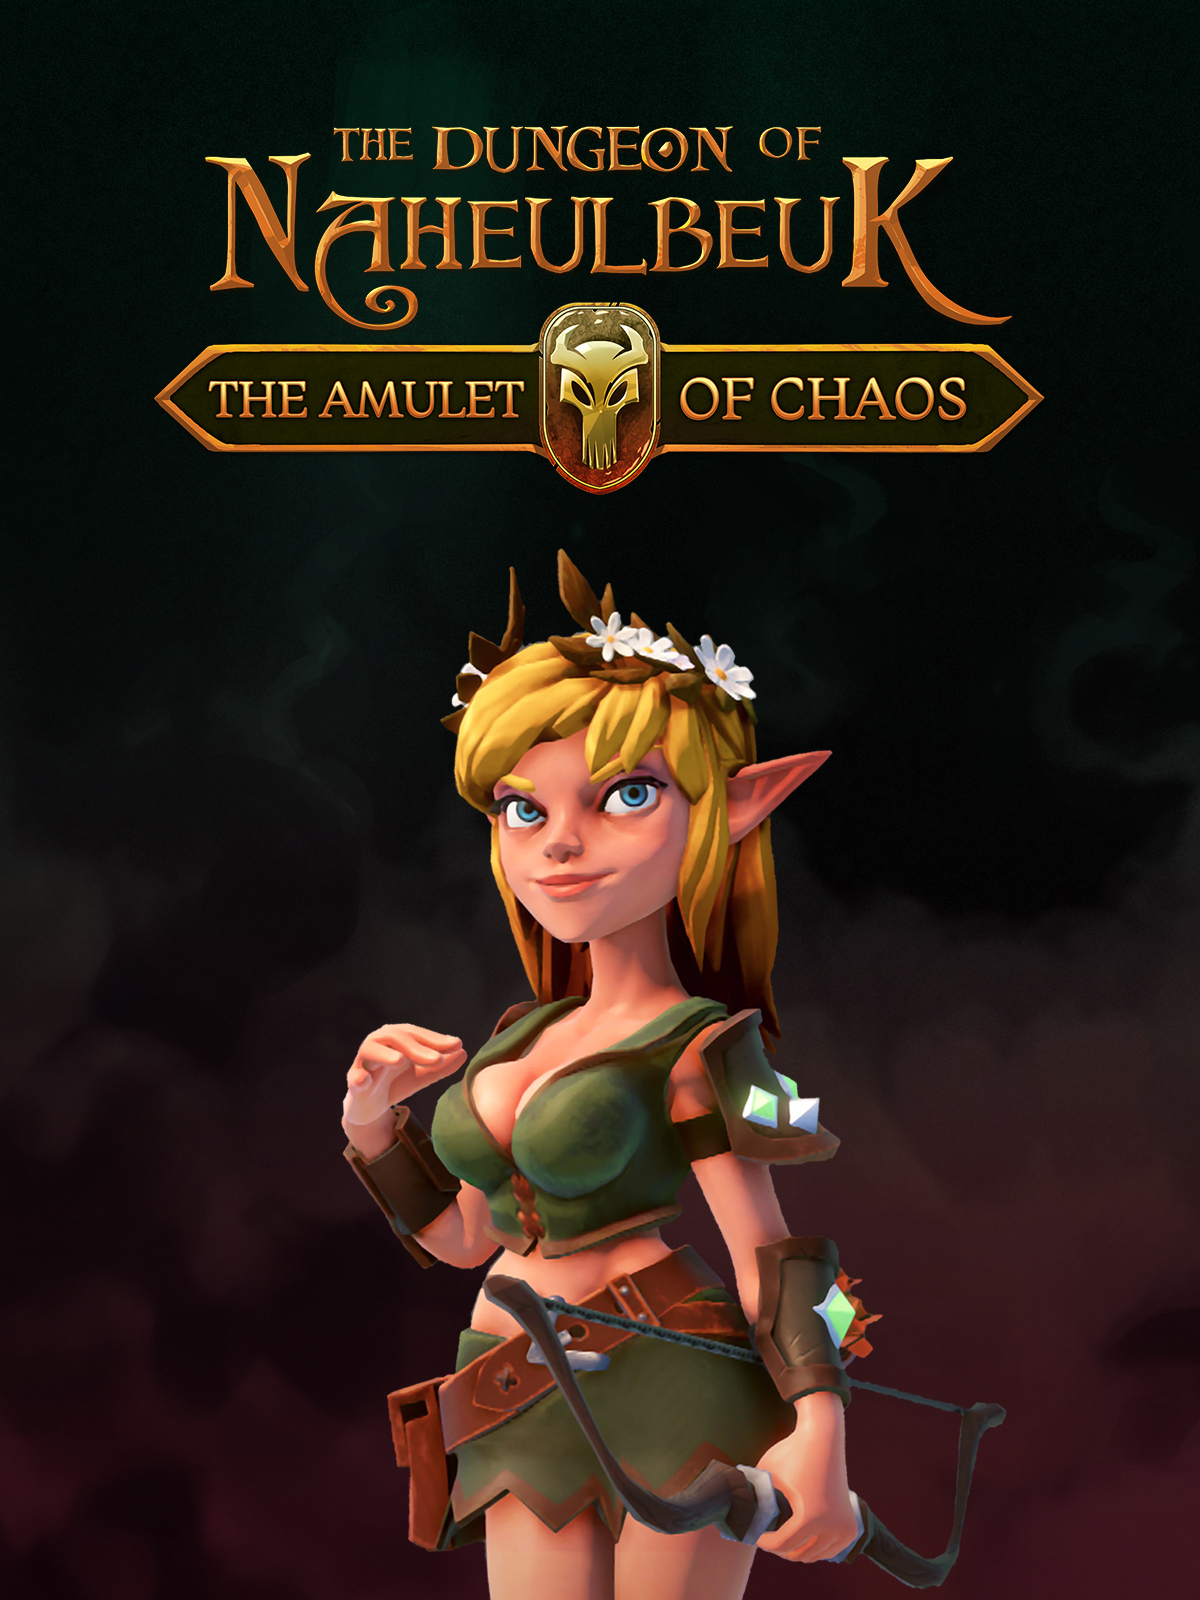 jaquette du jeu vidéo Le Donjon de Naheulbeuk : L'Amulette du Désordre